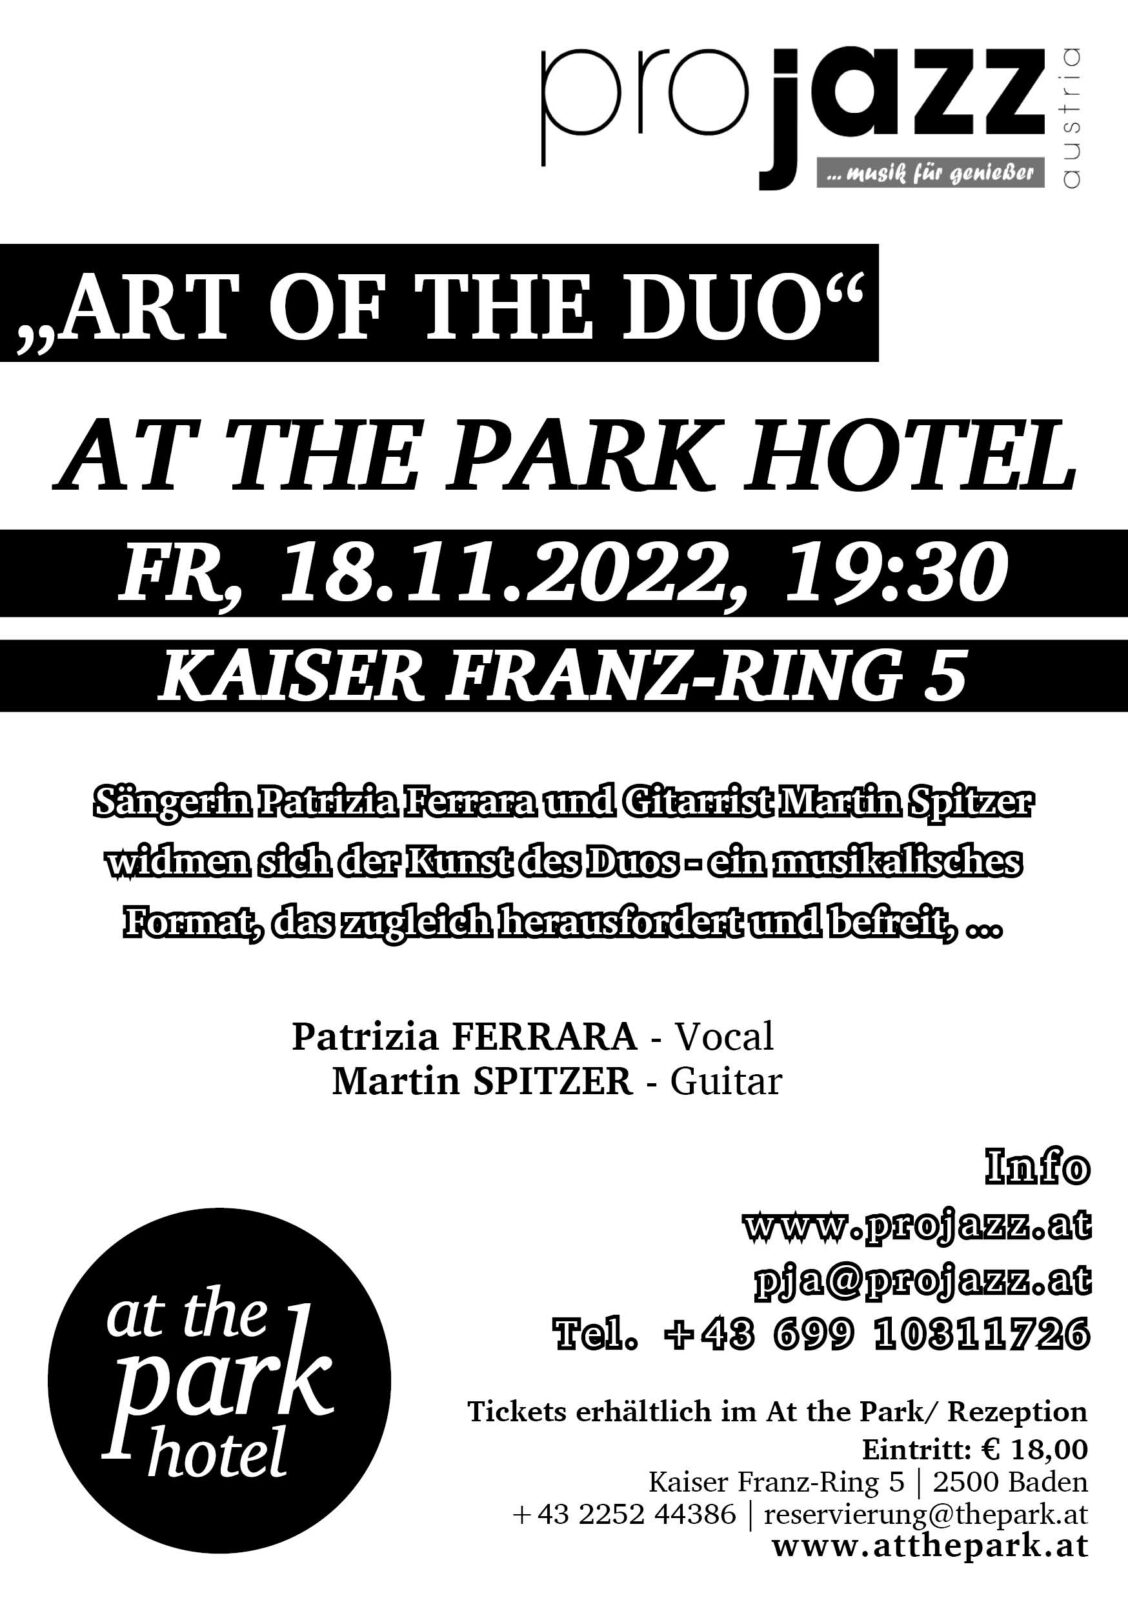 Verein Pro Jazz Austria Live Konzert mit „Art of the Duo“ im At the Park Hotel!